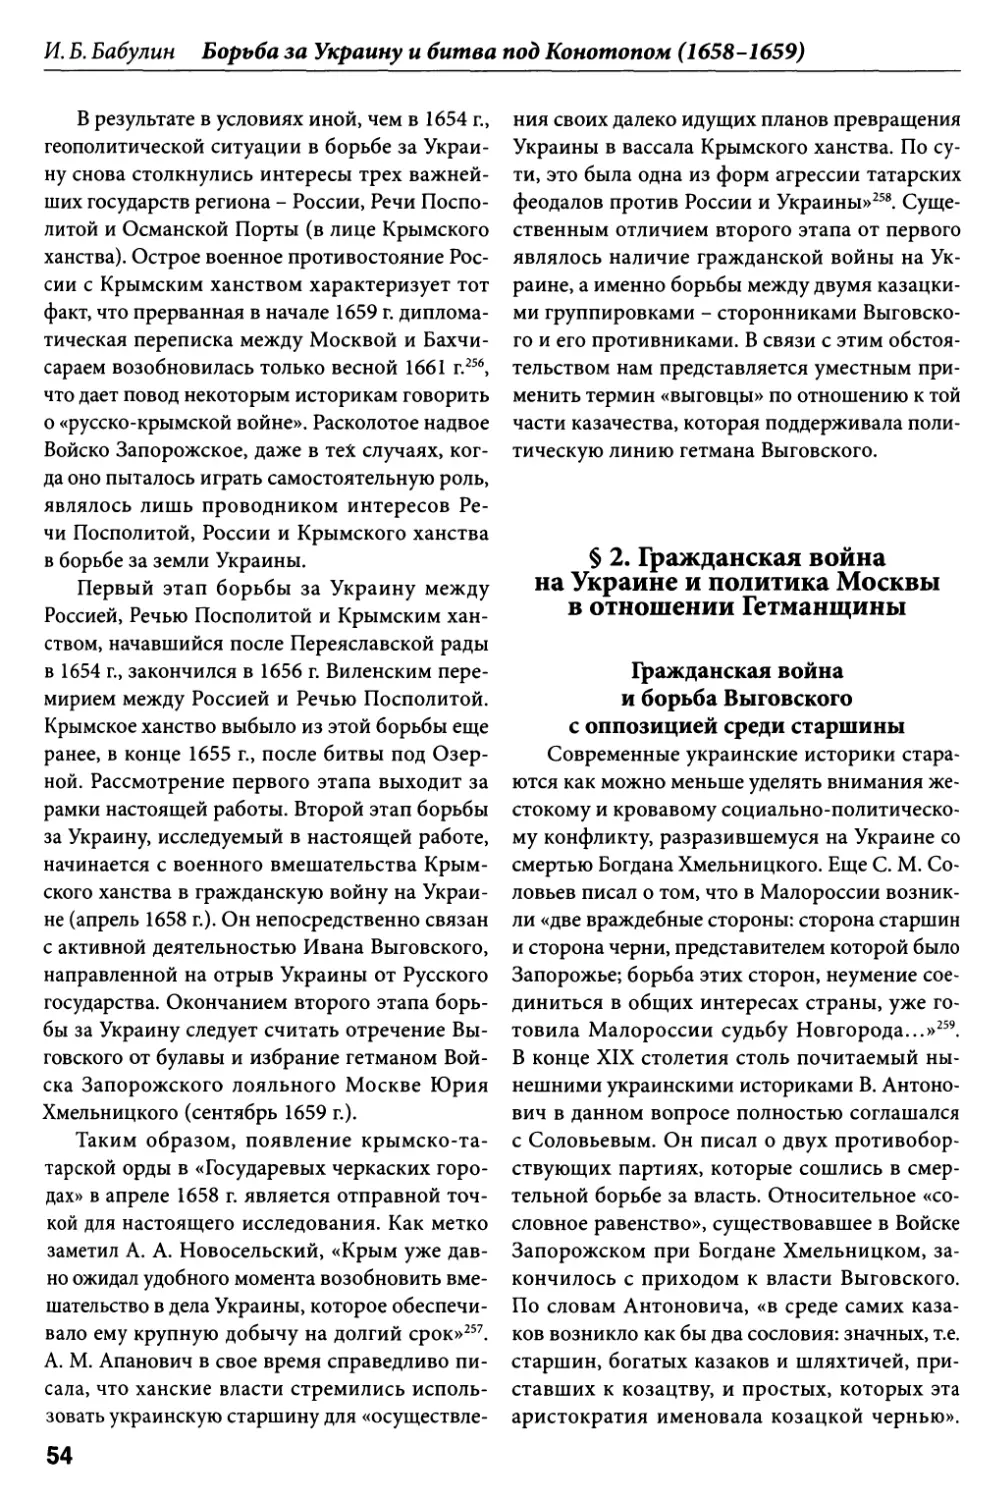 § 2. Гражданская война на Украине и политика Москвы в отношении Гетманщины